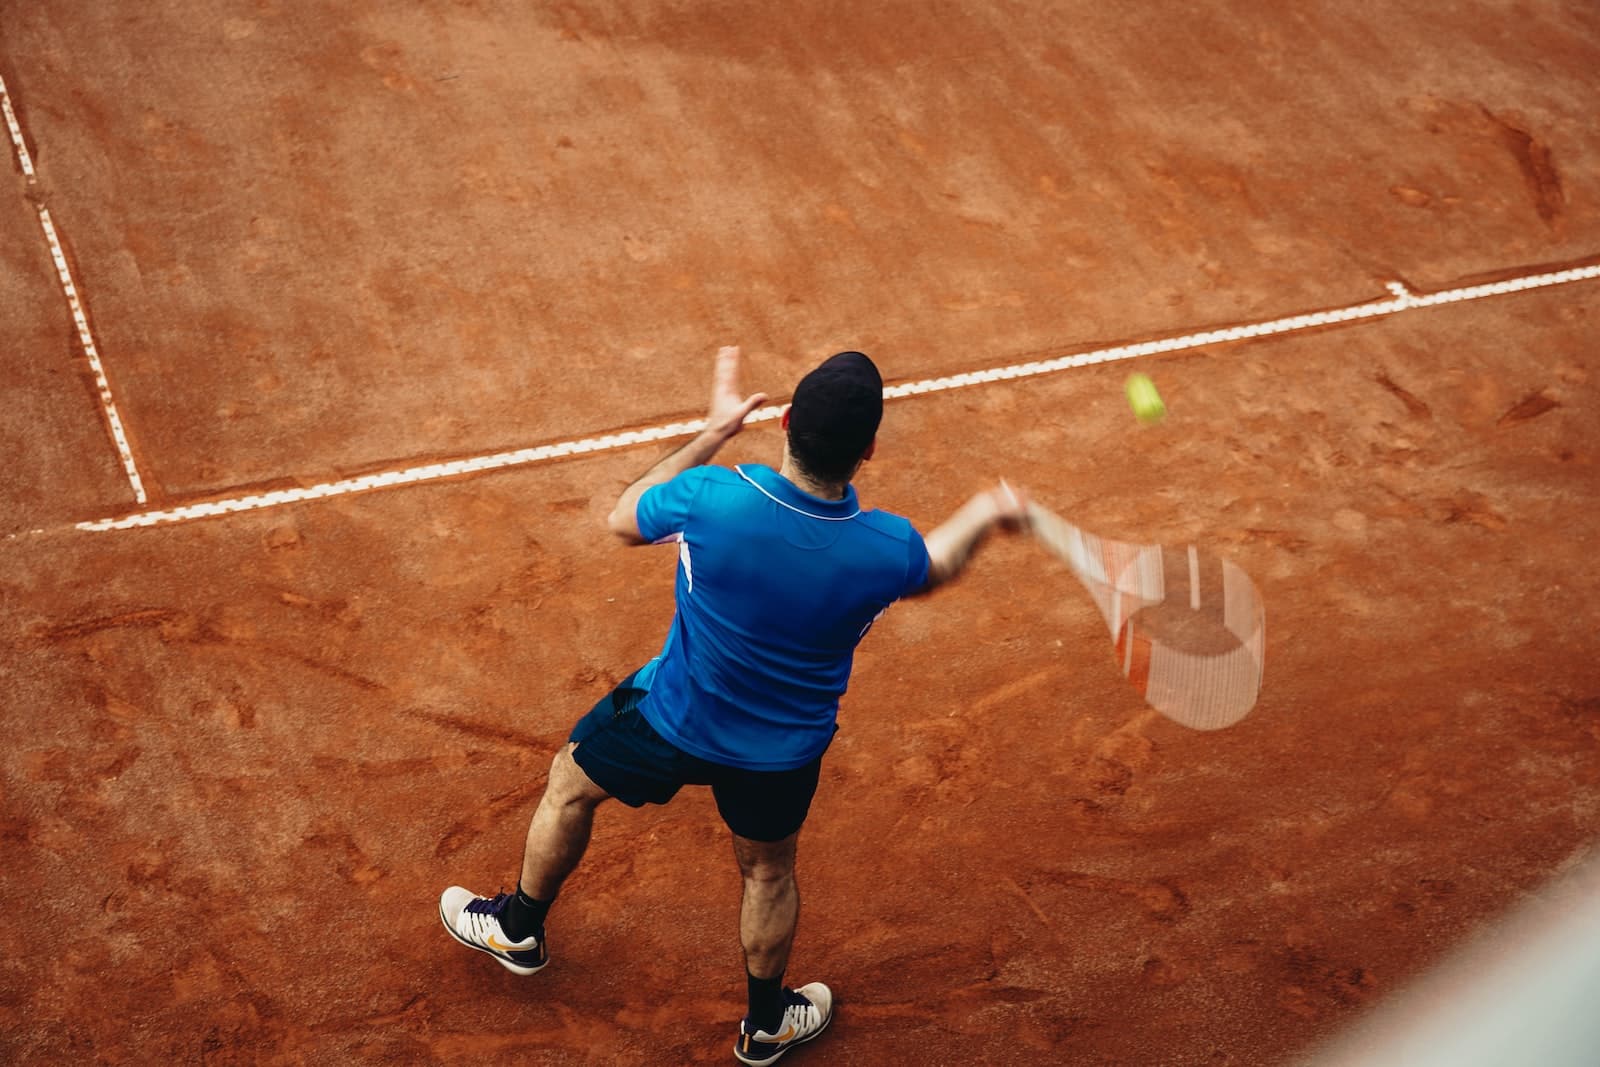 Comment faire un bon pronostic tennis gagnant ? Le guide complet